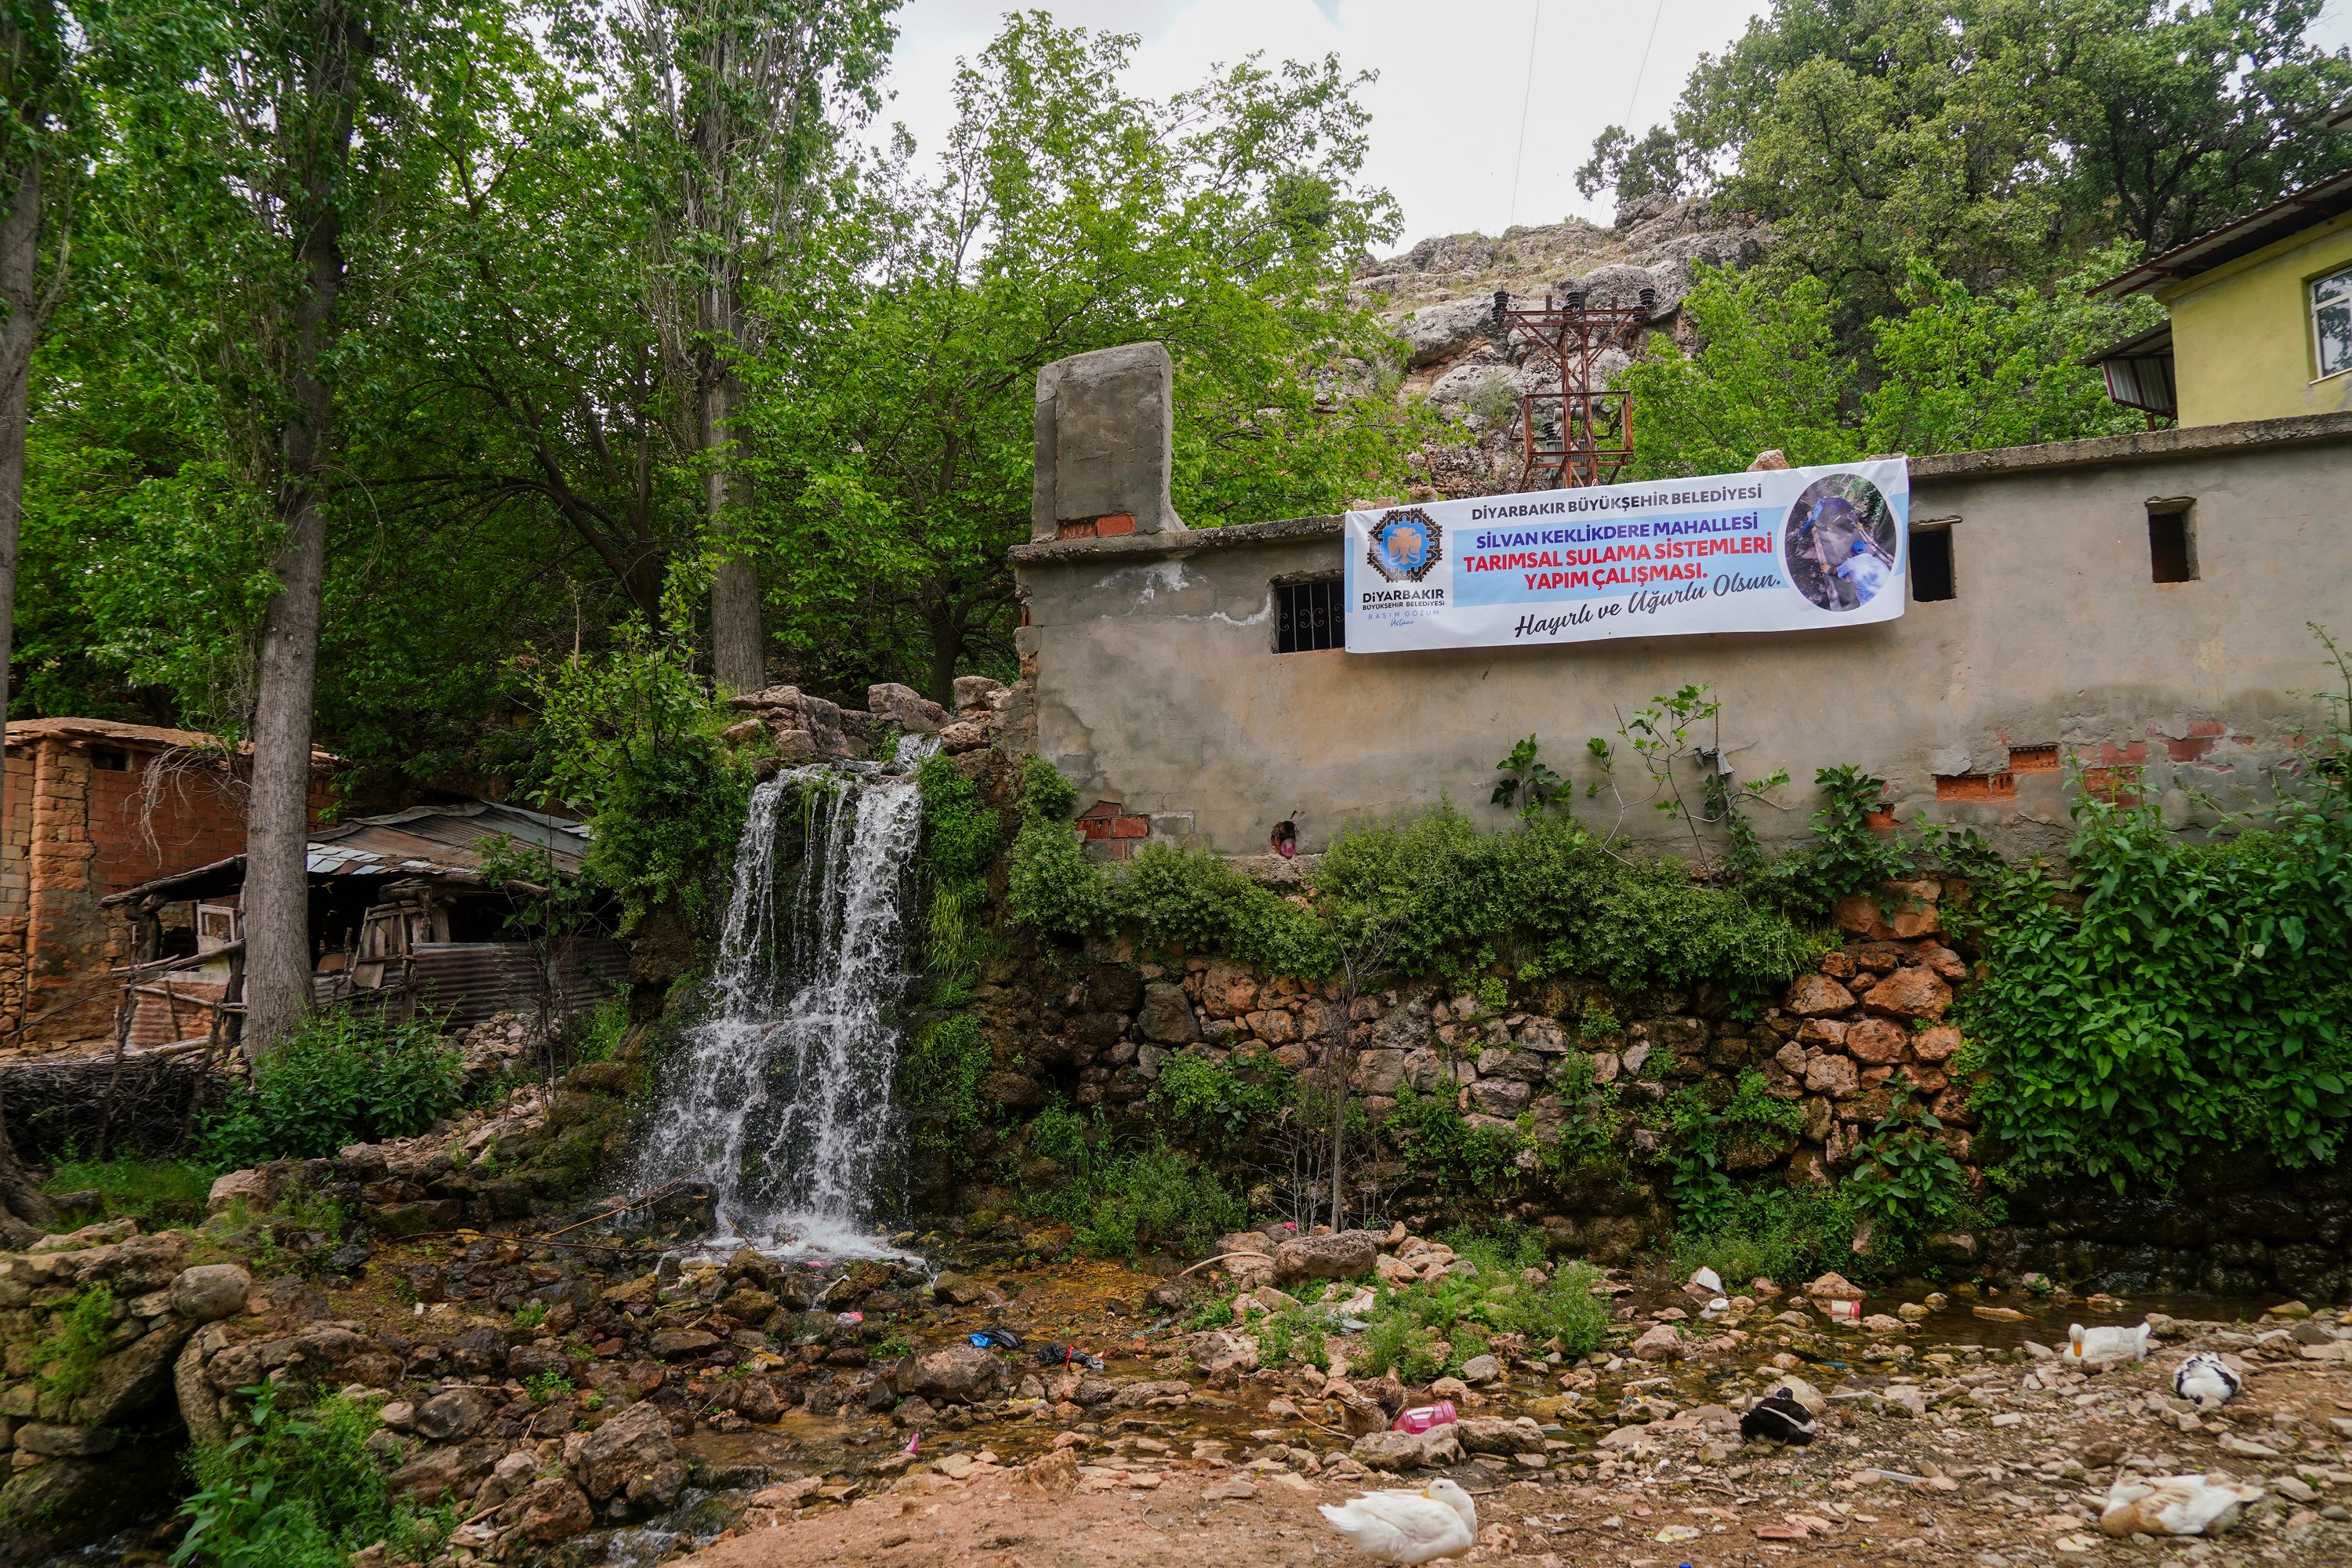 Diyarbakır’da çiftçilere sulama kanalı yapılıyor